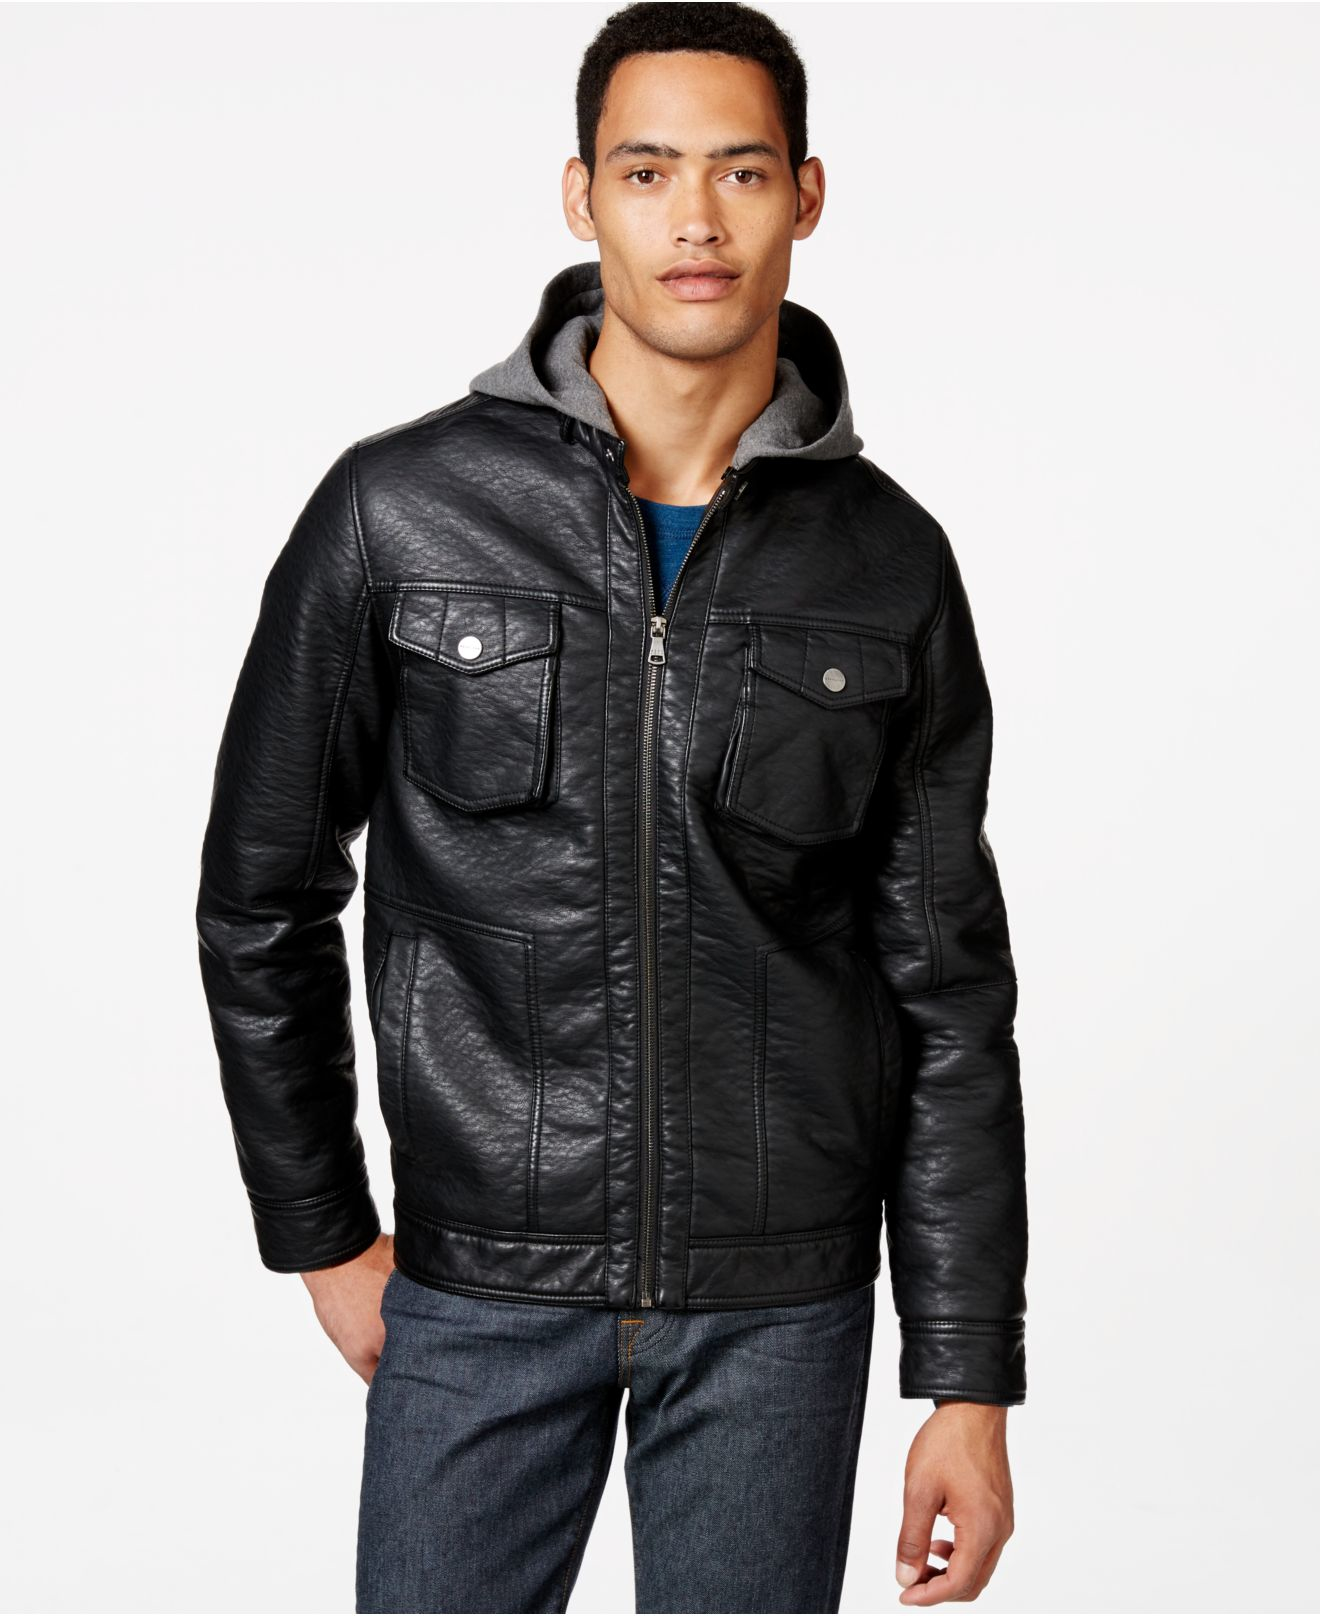 sean jean leather jacket